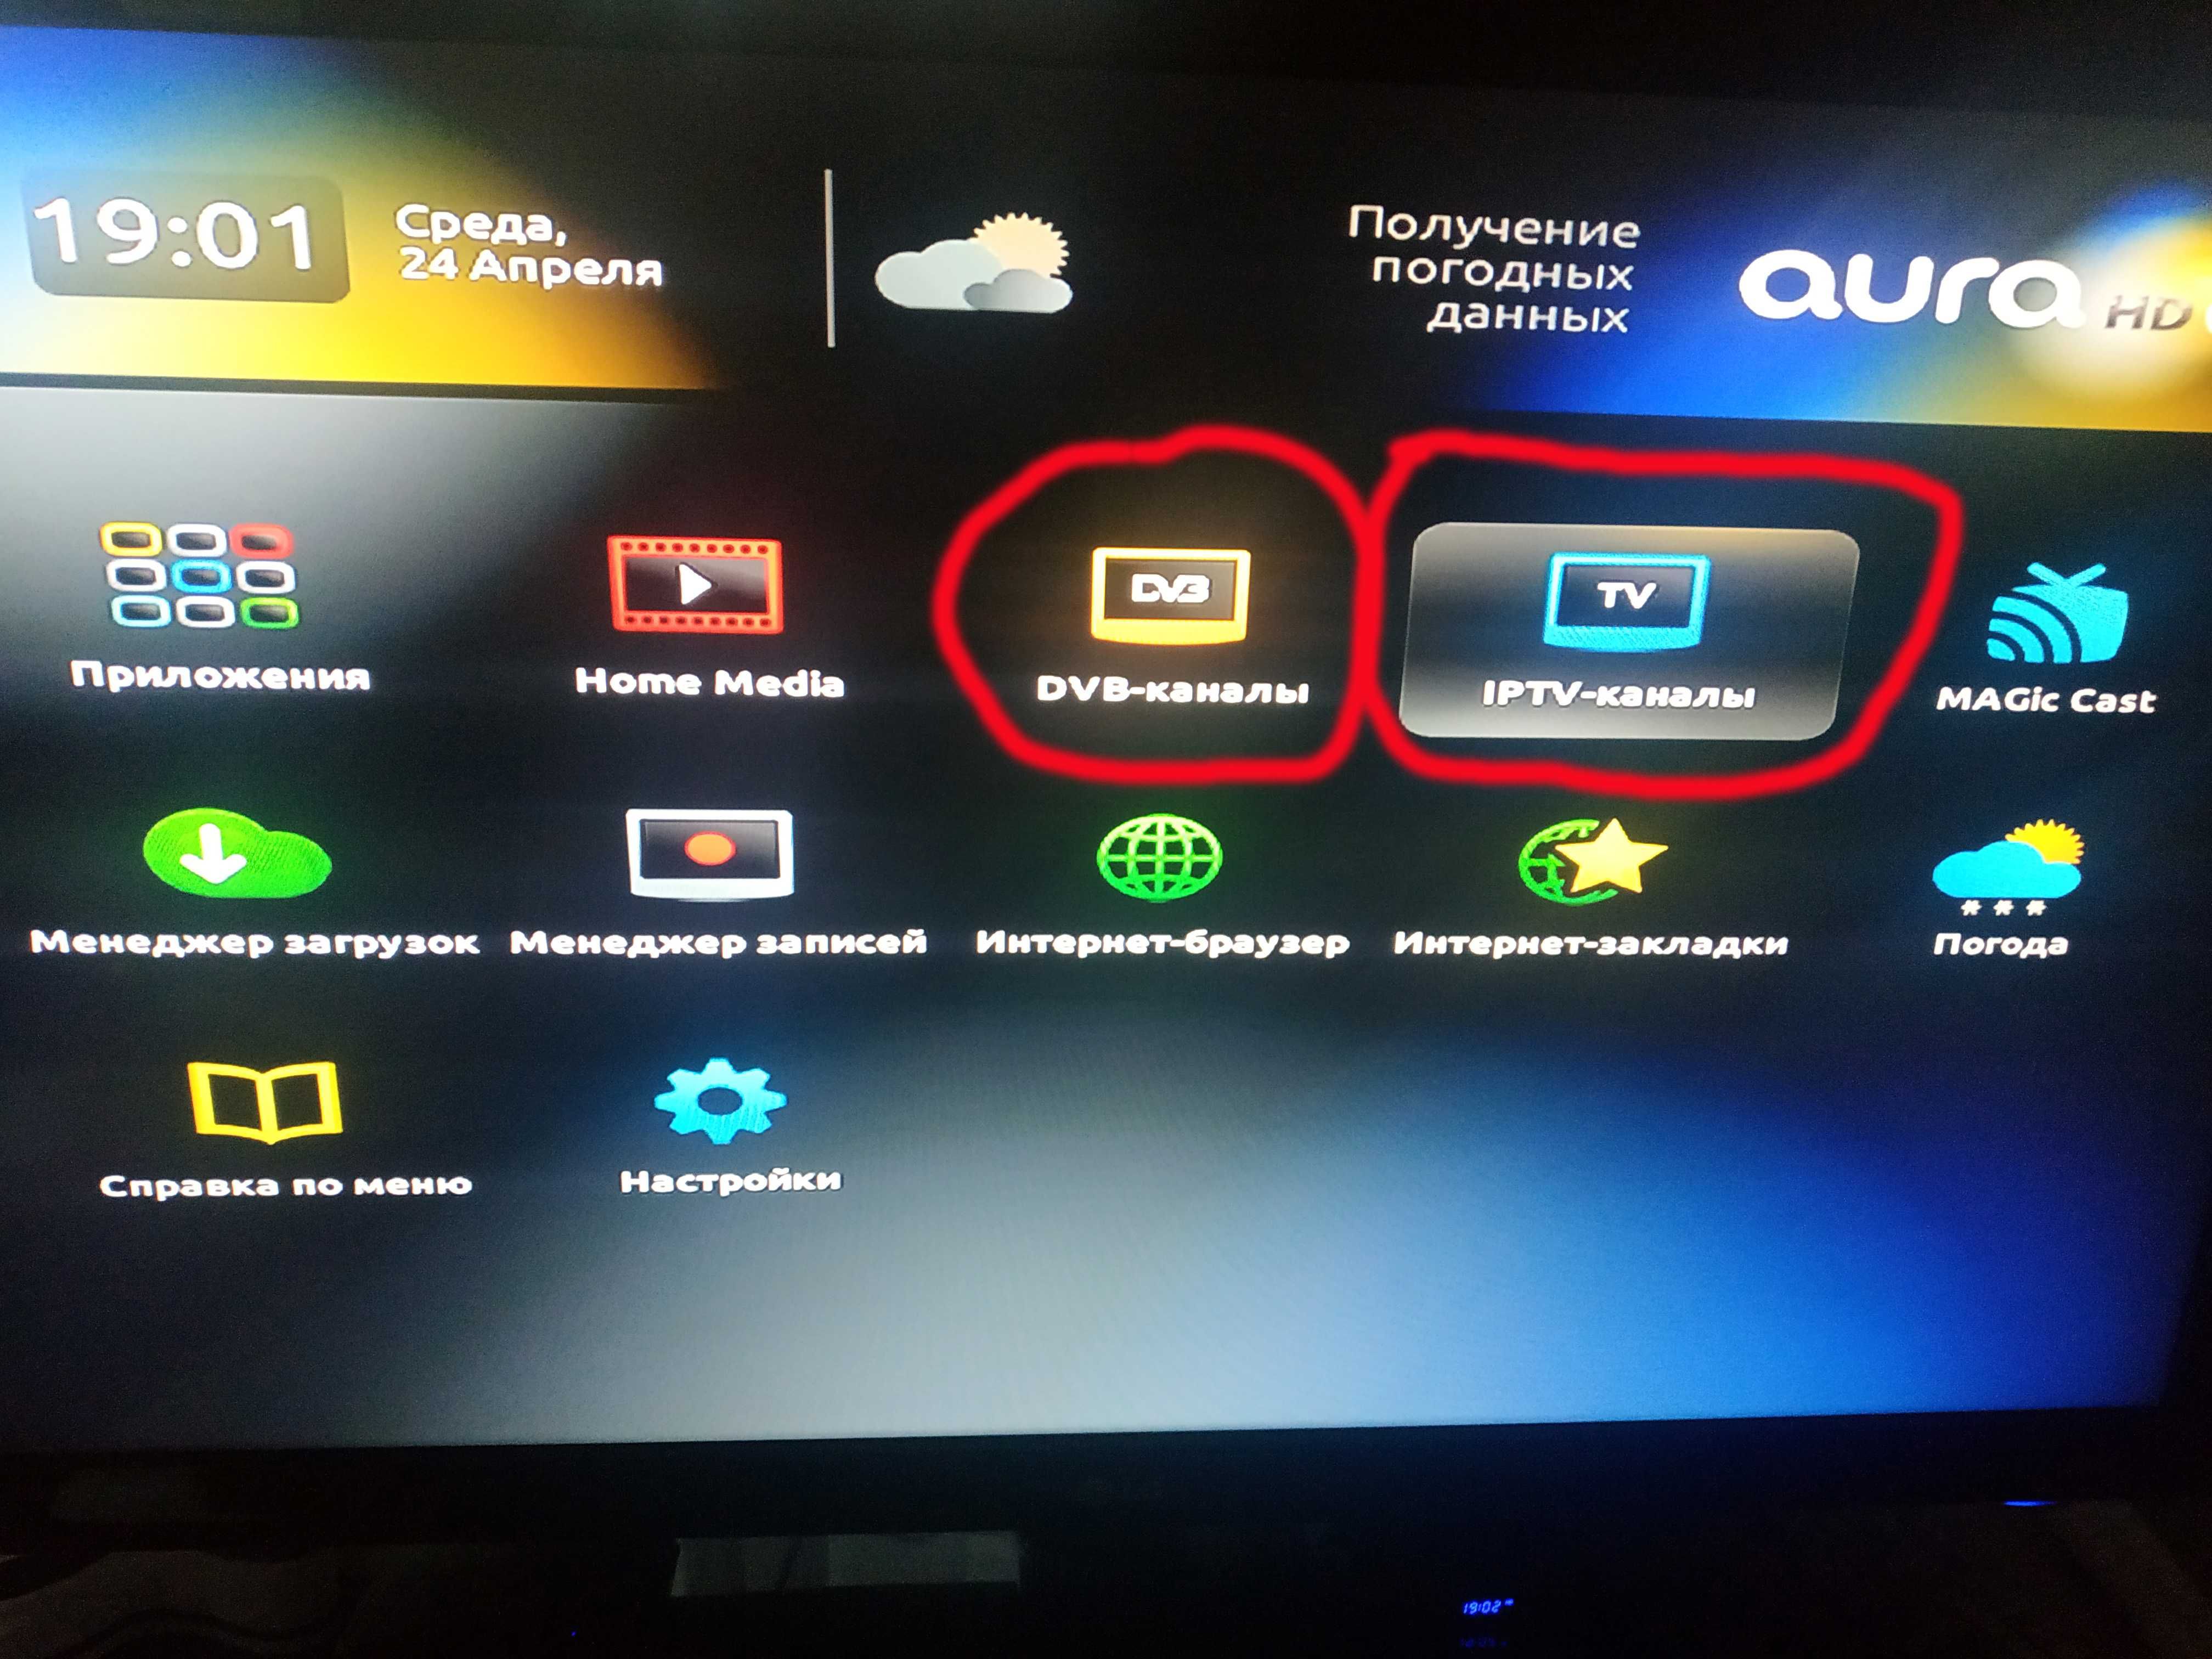 aura hd + Т2  телевизионная приставка + антенна